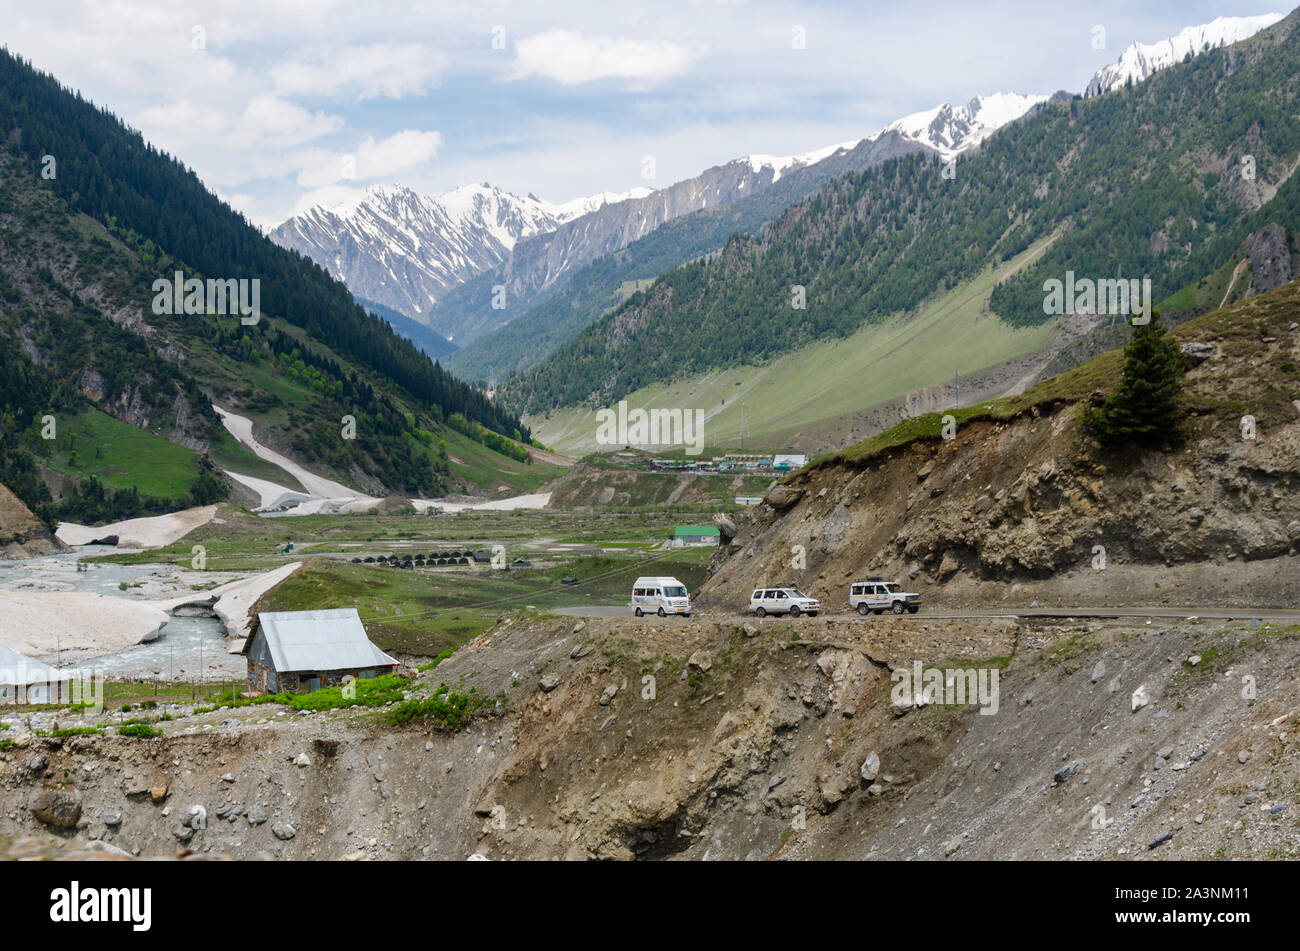 Blick auf die Landschaft und Srinagar - Leh Autobahn während der Sommersaison bei Baltal, Jammu und Kaschmir, Indien Stockfoto